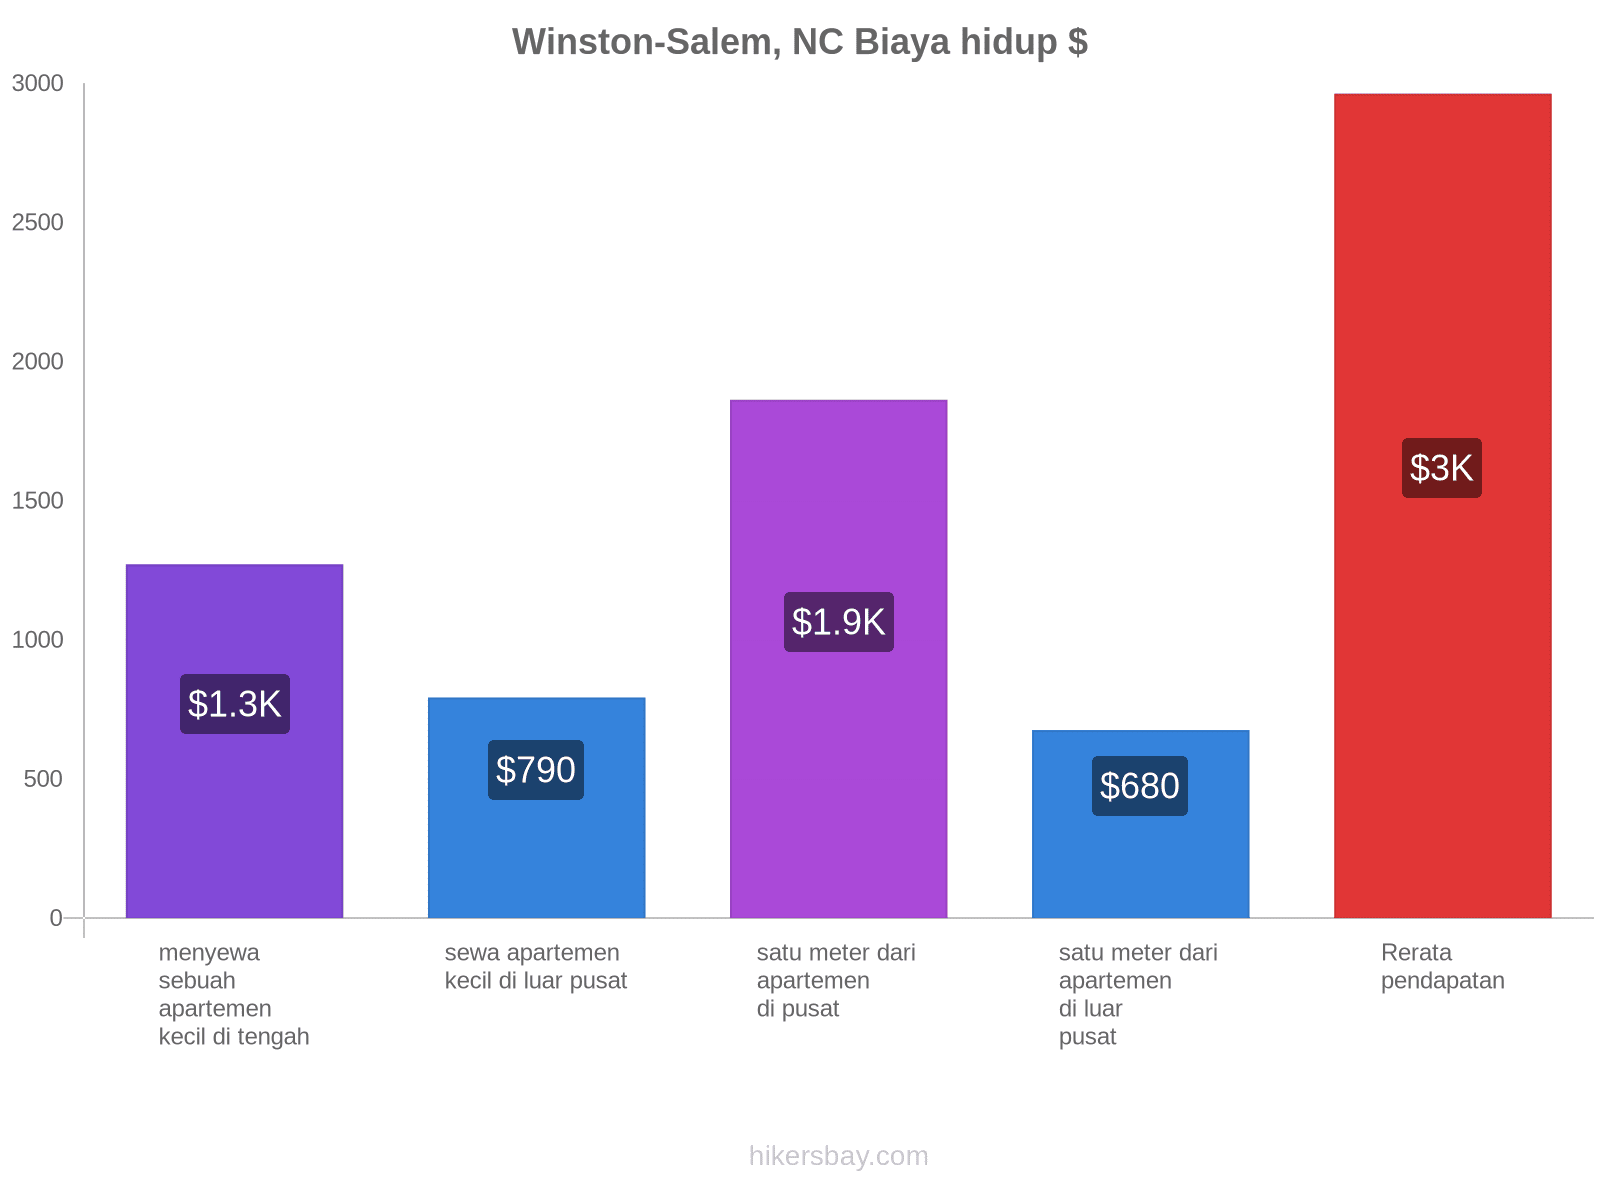 Winston-Salem, NC biaya hidup hikersbay.com